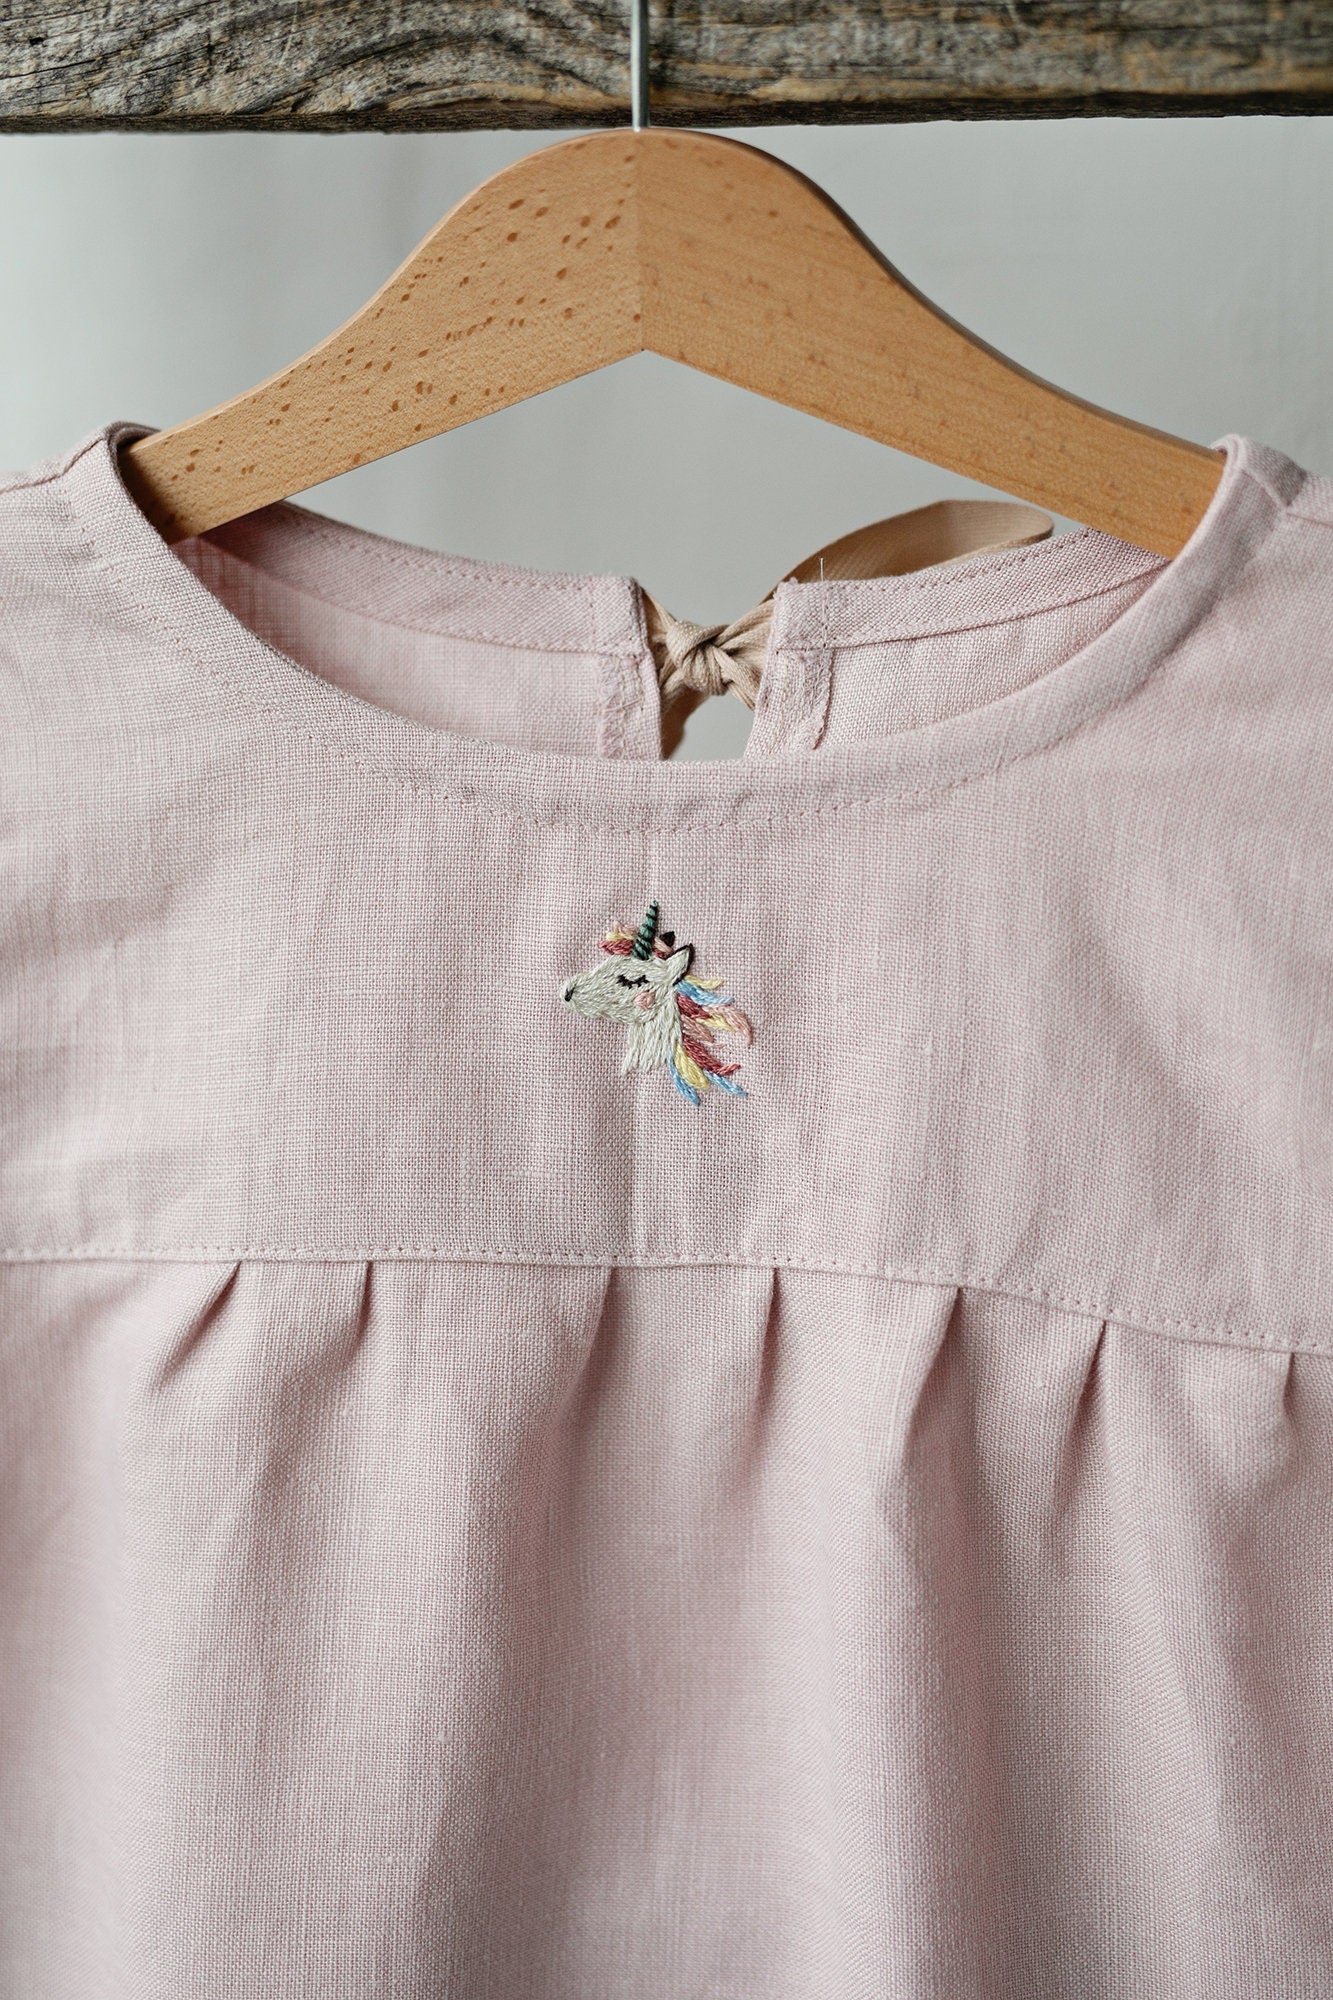 Baby Pink Summer Linen Dress